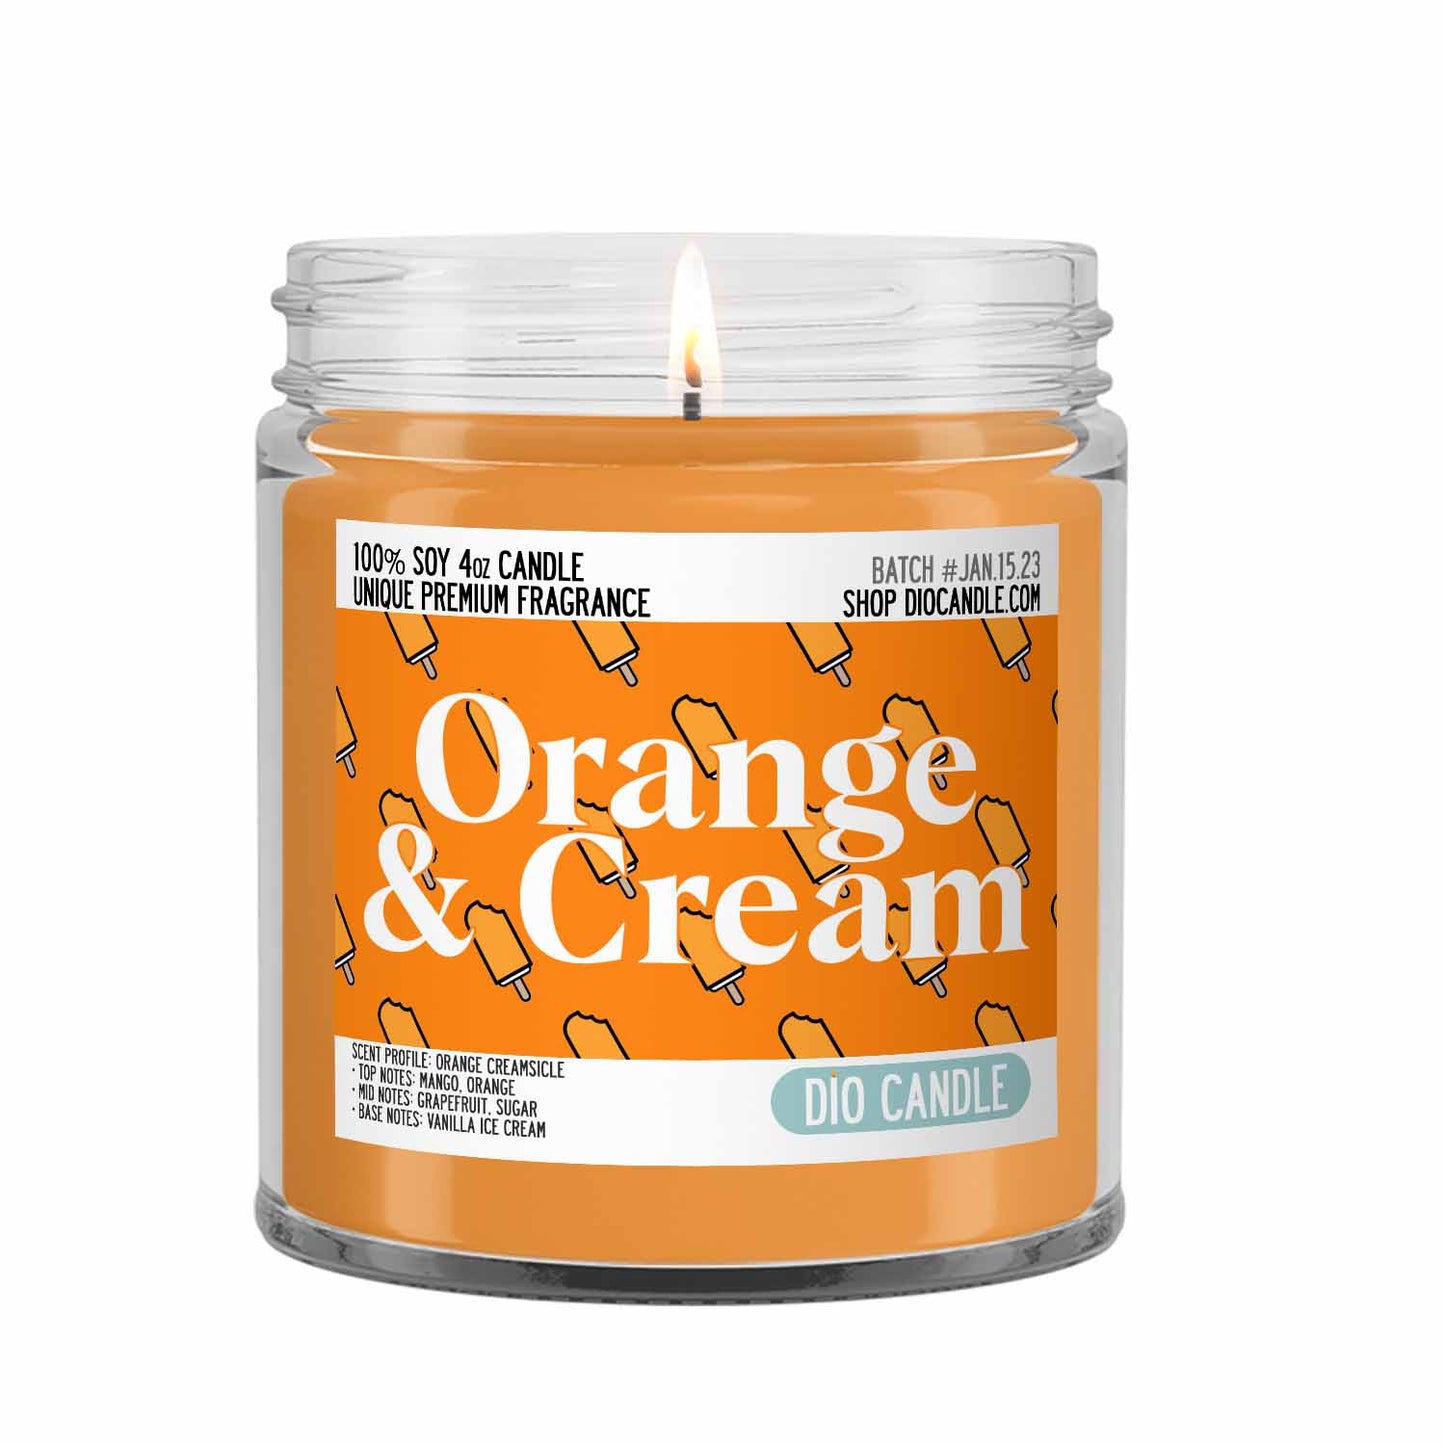 Orange and Cream Ice Cream Candle